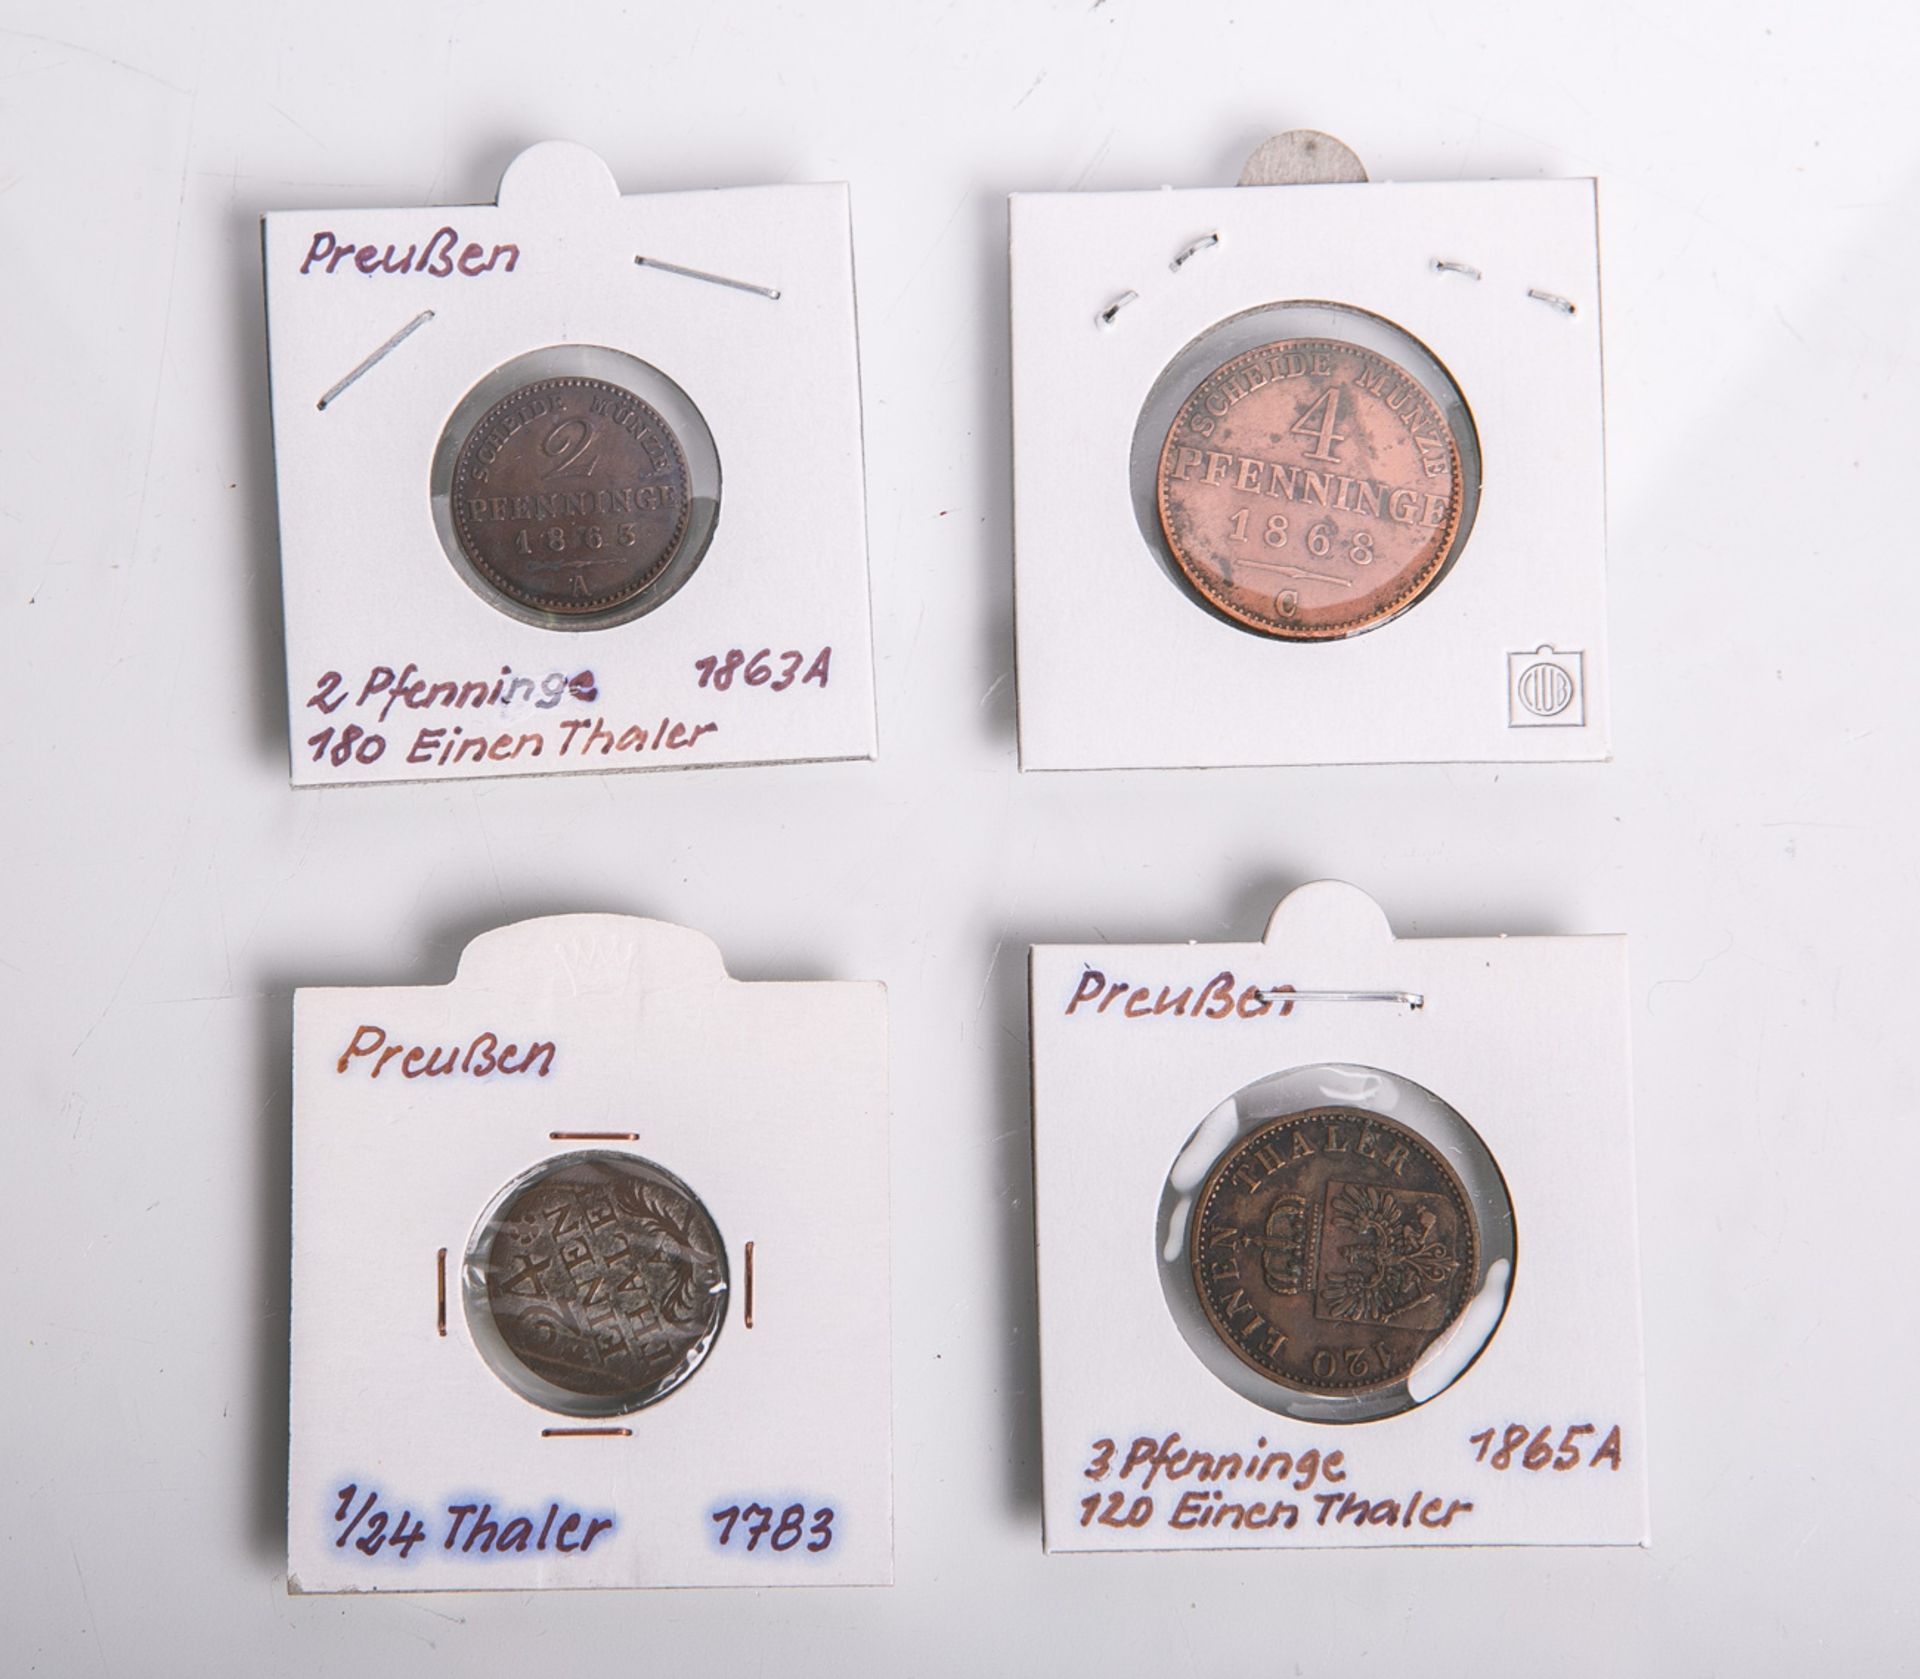 Konvolut von 4 Kleinmünzen aus Kupfer (Preussen), bestehend aus: 1x 3 Pfennige (1865, A,